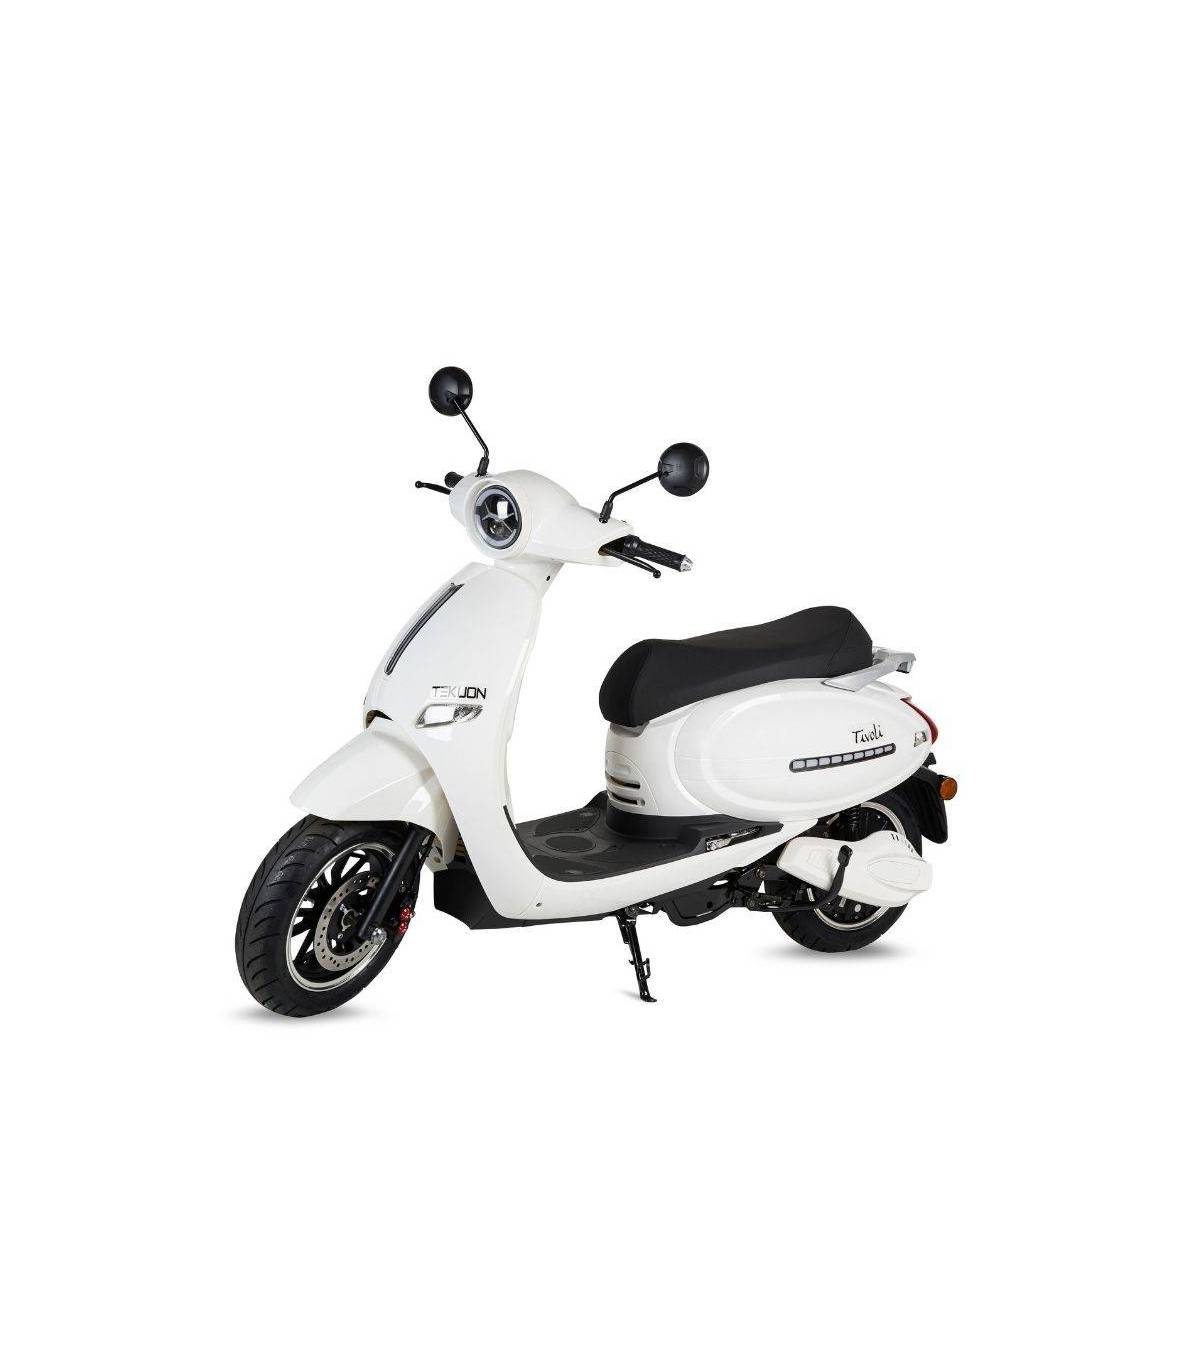 Motos moto electrica adulto de segunda mano, km0 y ocasión